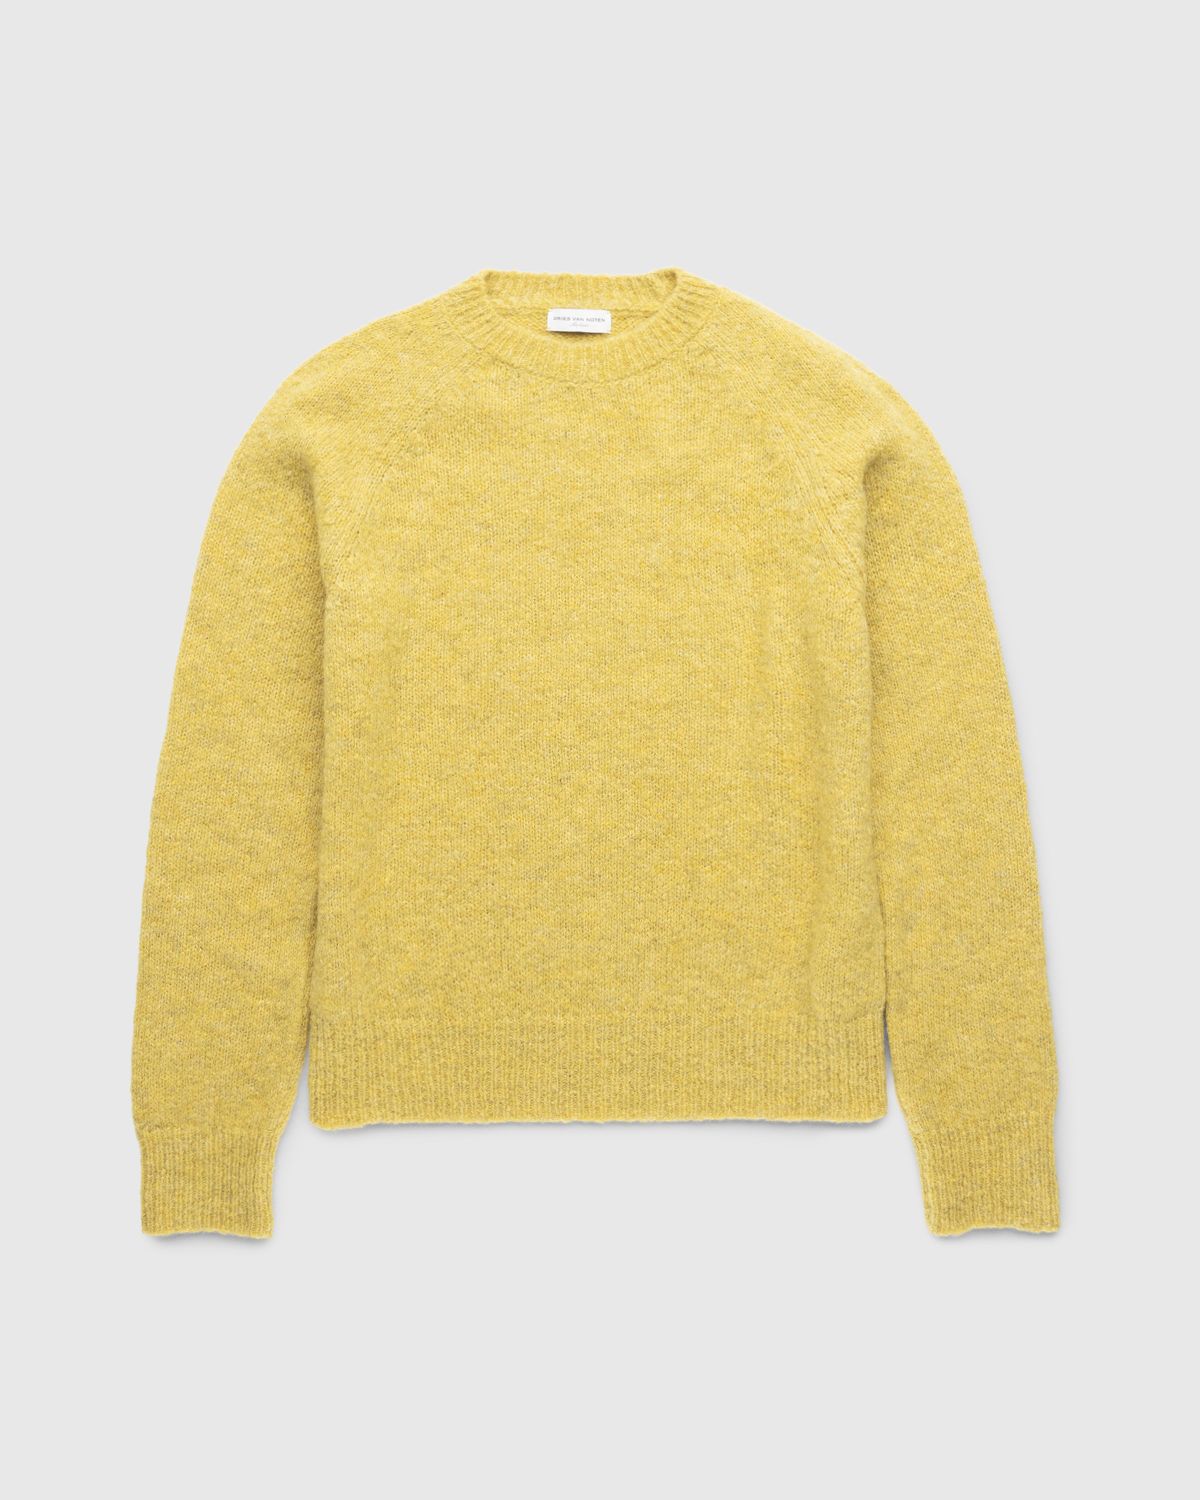 Dries van Noten – Melbourne Knit Yellow | Highsnobiety Shop